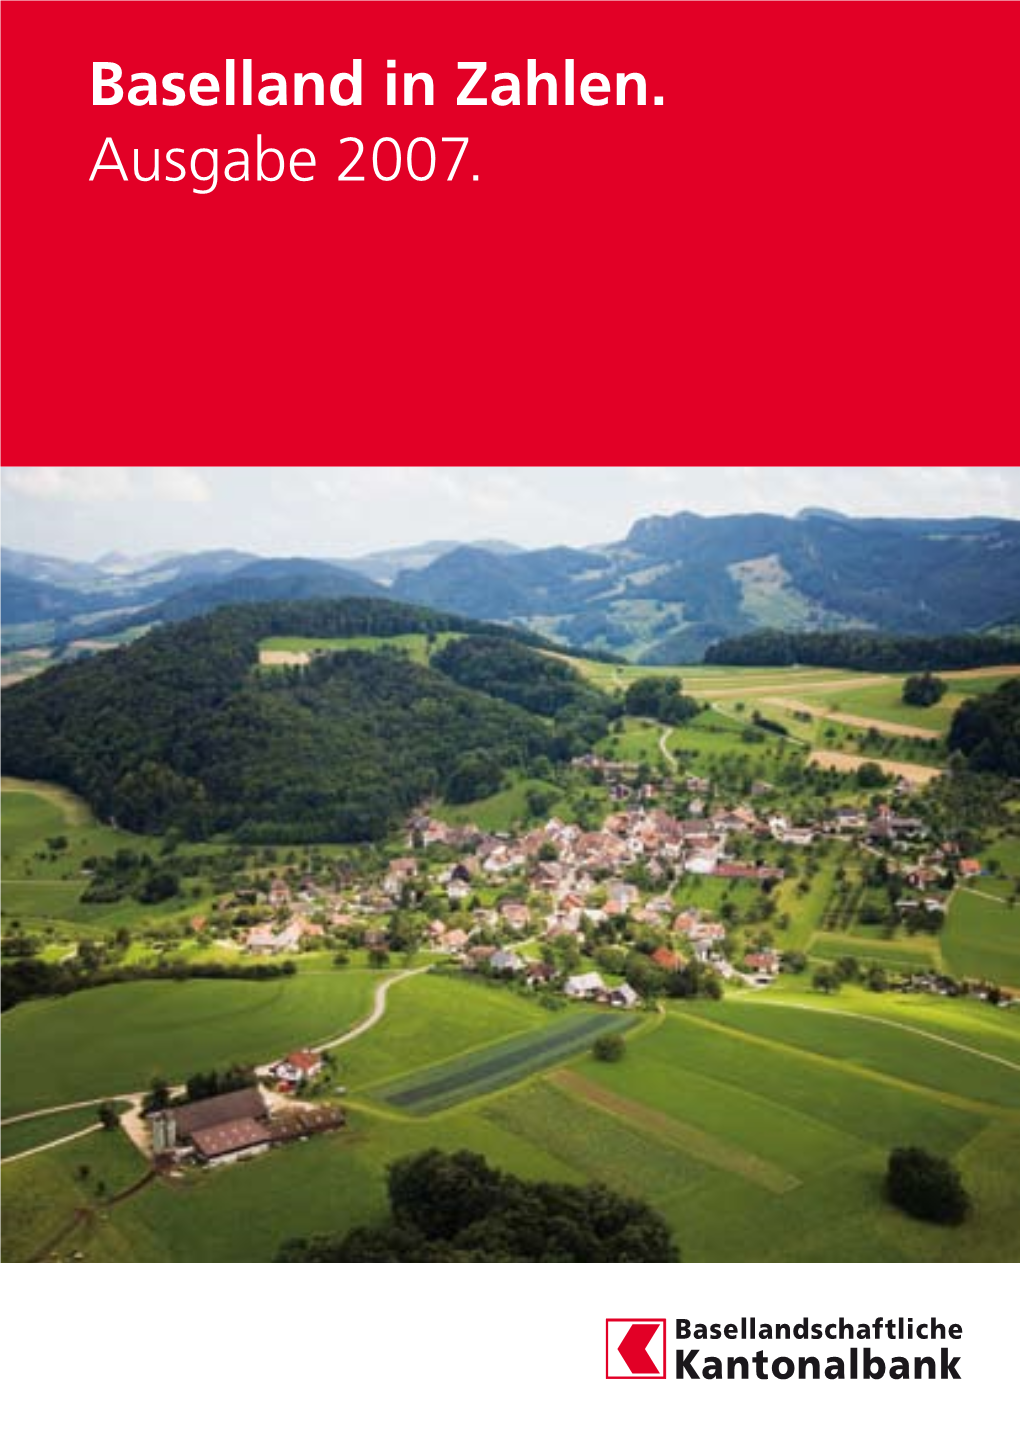 Baselland in Zahlen. Ausgabe 2007. Die Basellandschaftliche Kantonalbank Auf Einen Blick 2006 2005 2004 Mio